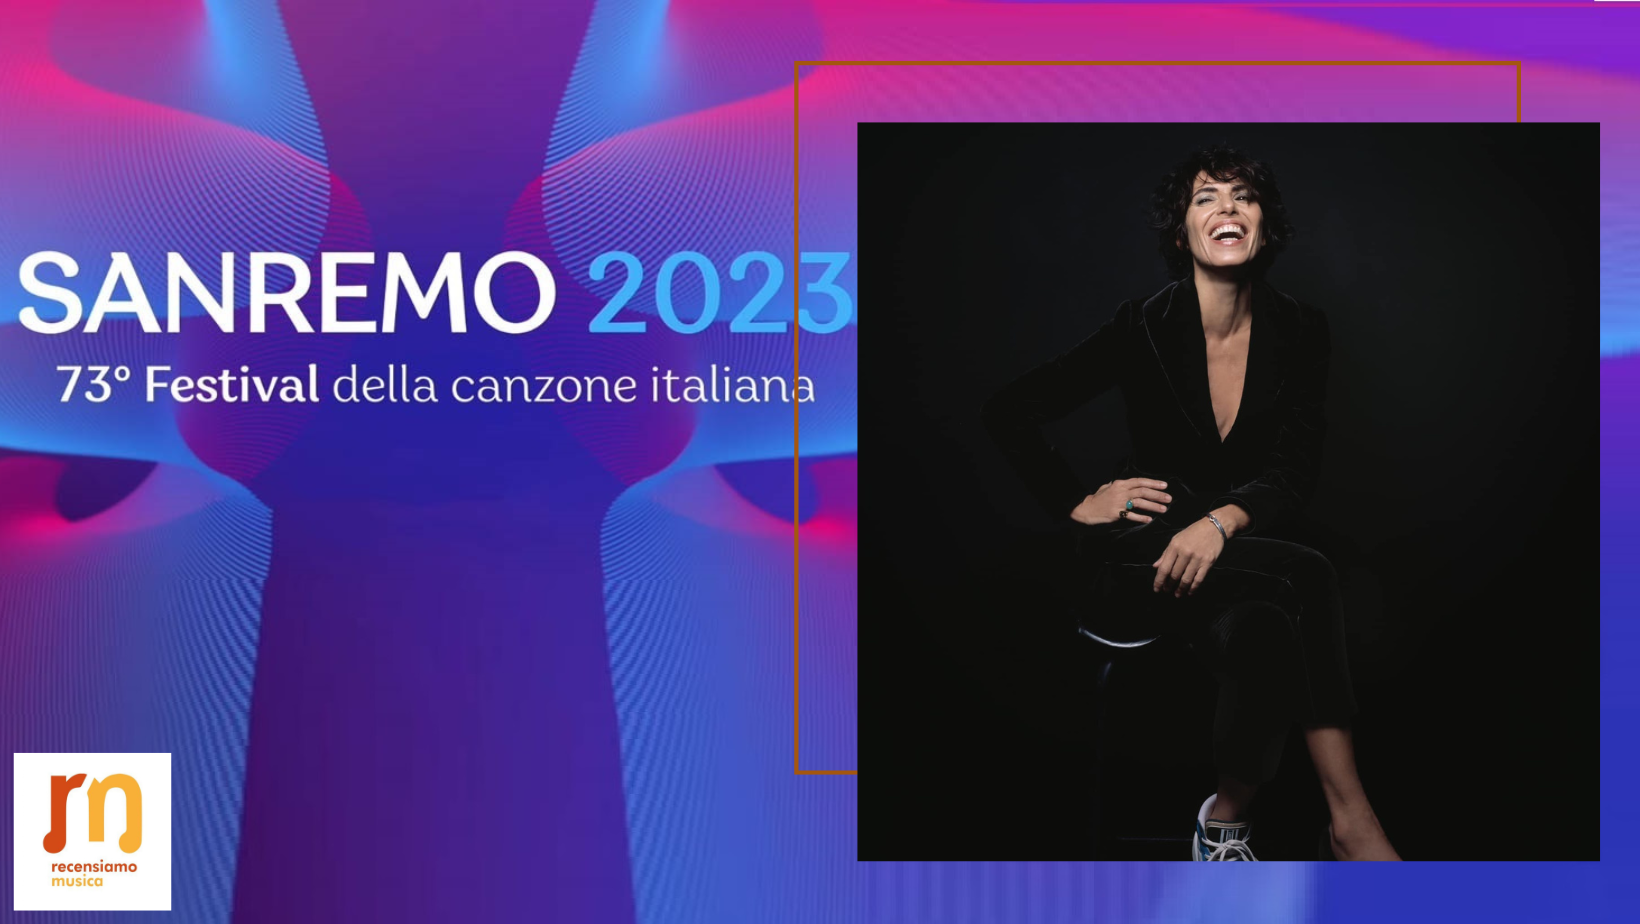 Giorgia Sanremo 2023